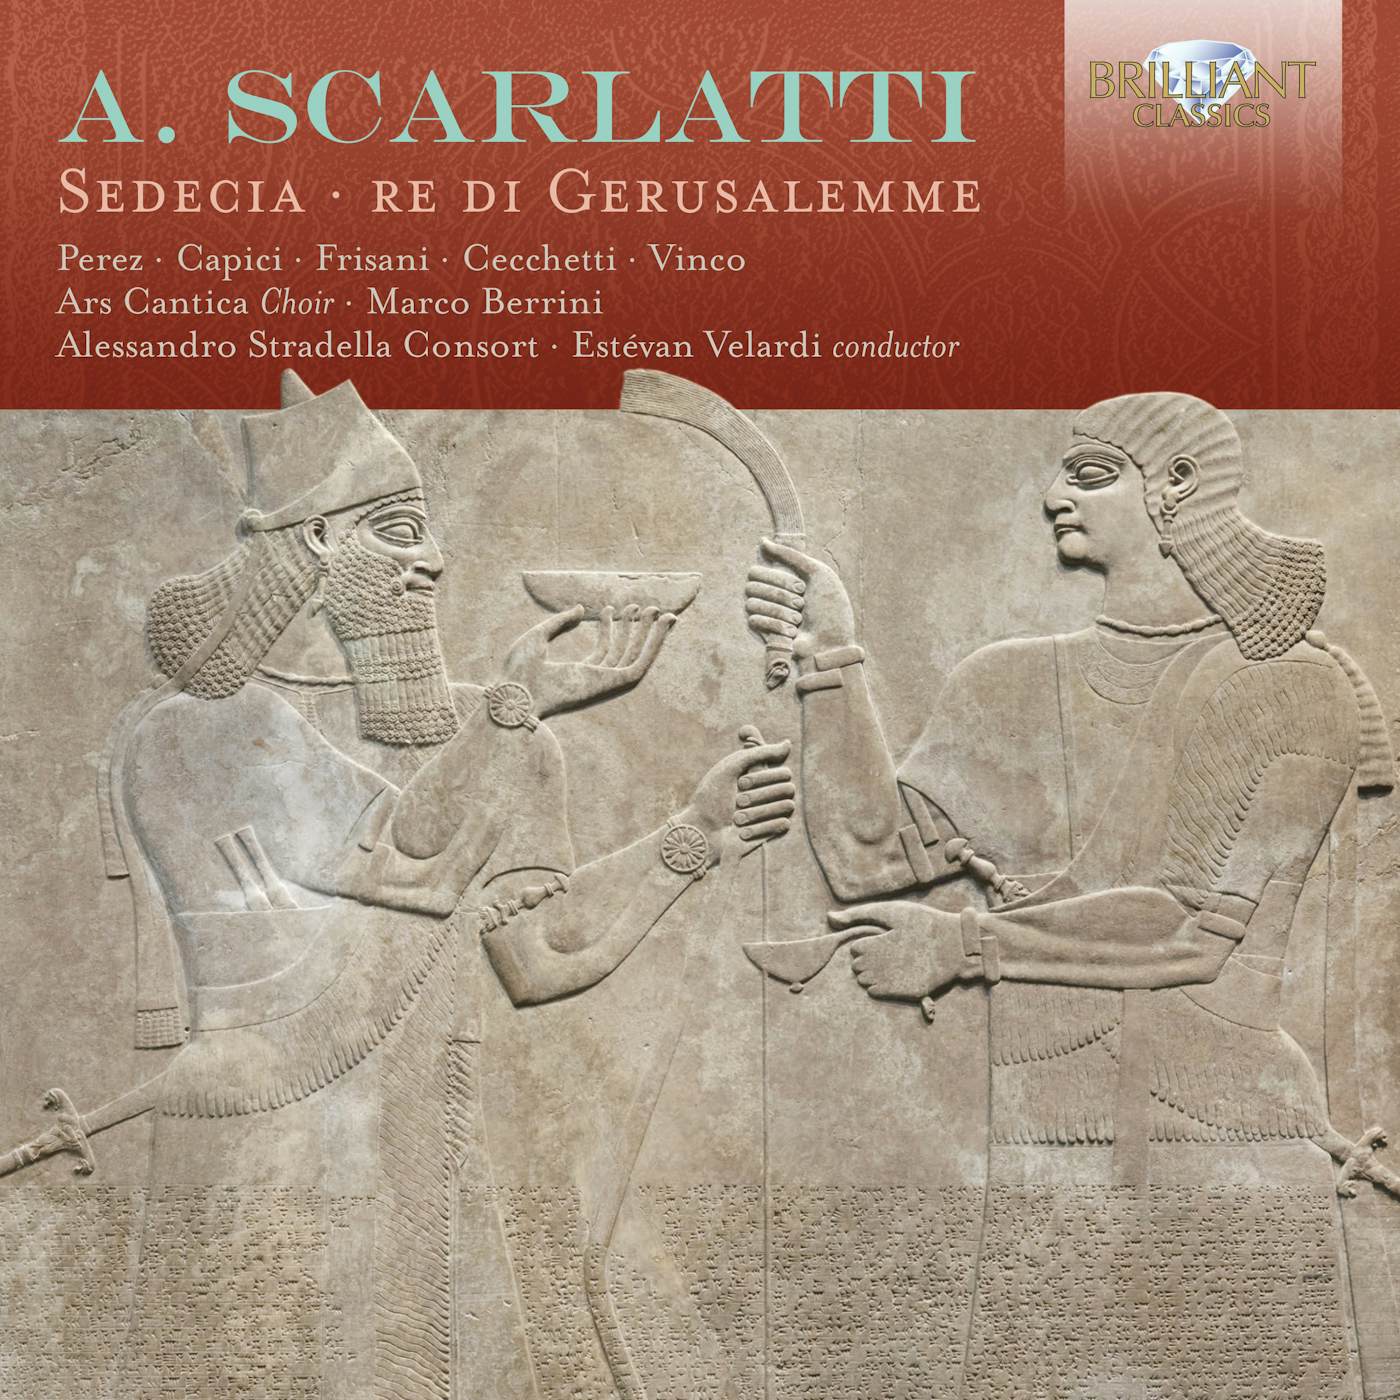 Scarlatti SEDECIA RE DI GERUSALEMME CD